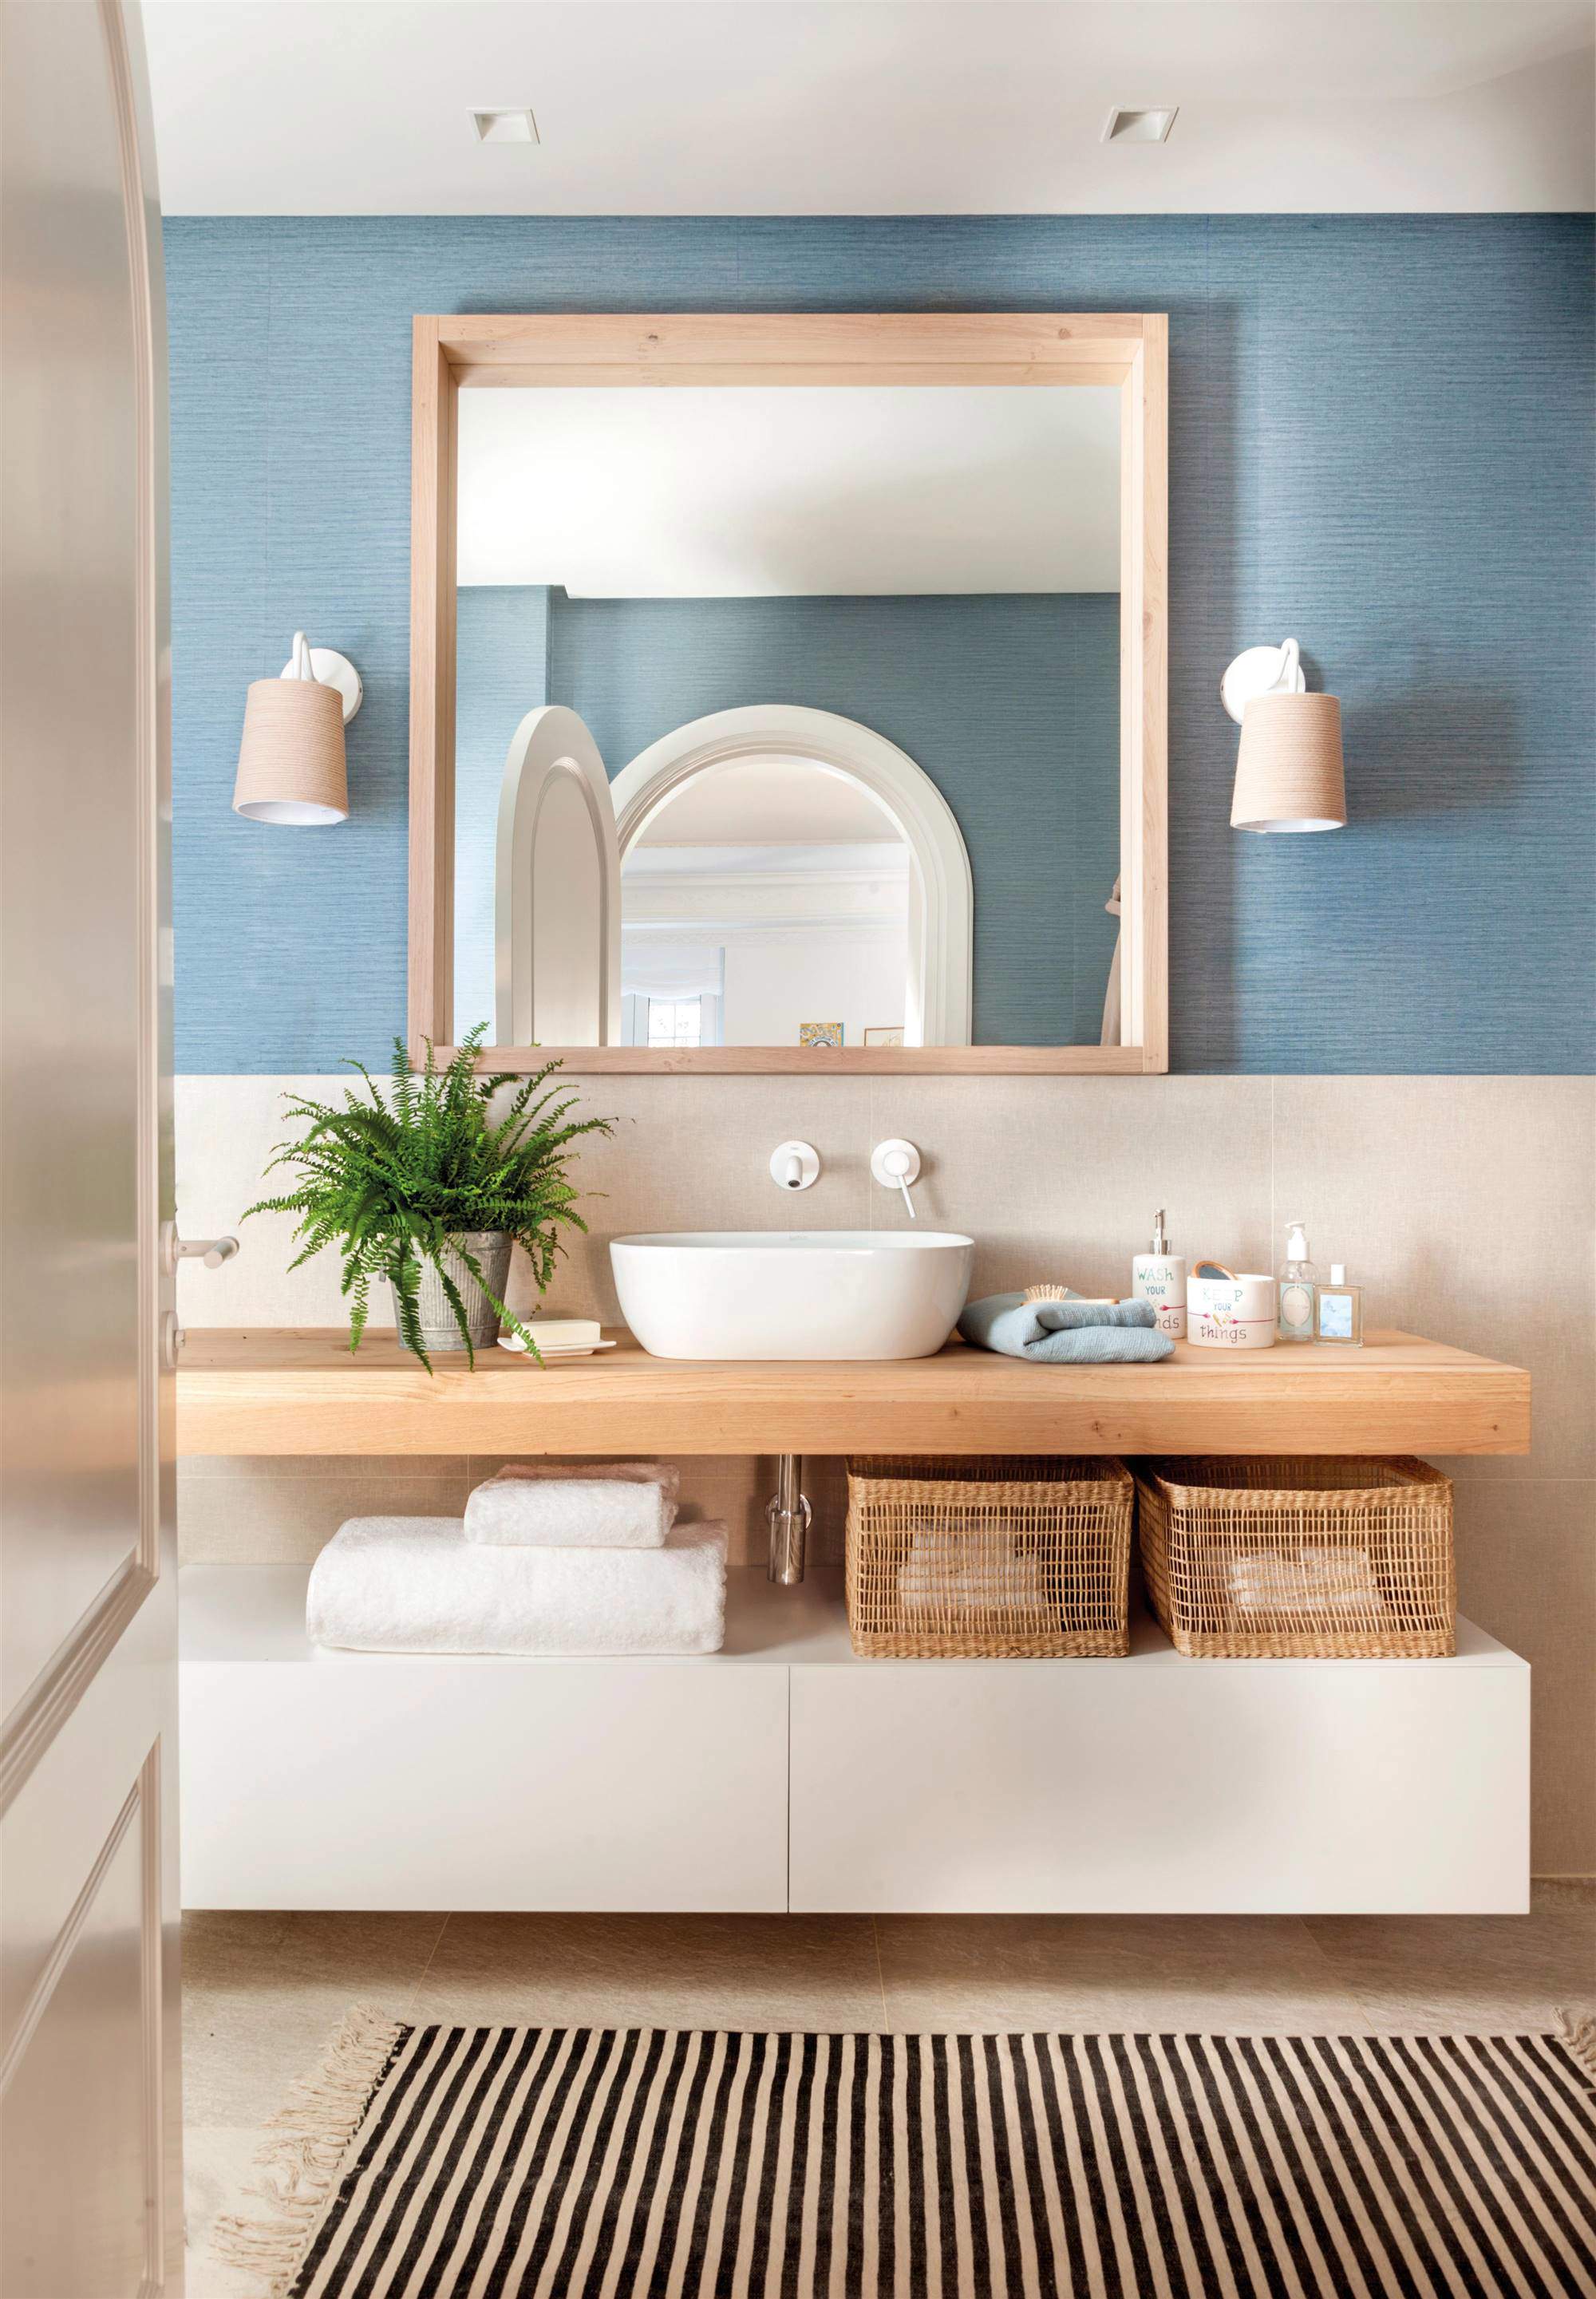 Baño con frente de papel pintado azul con textura y mueble volado en blanco y madera.